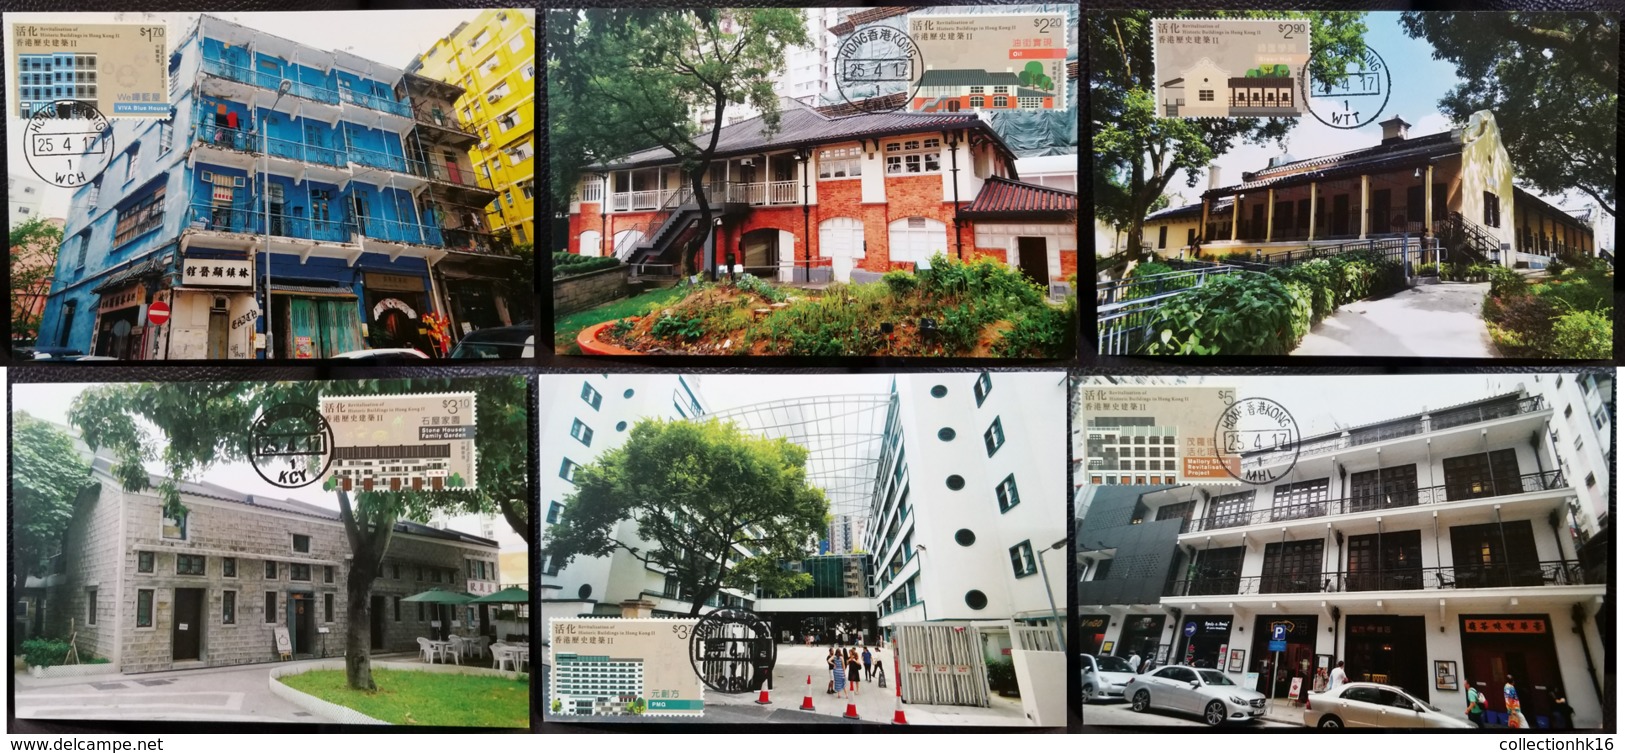 Revitalisation Of Historic Buildings In Hong Kong II 2017 Hong Kong Maximum Card MC Set (Location Postmark) (6 Cards) - Maximumkaarten